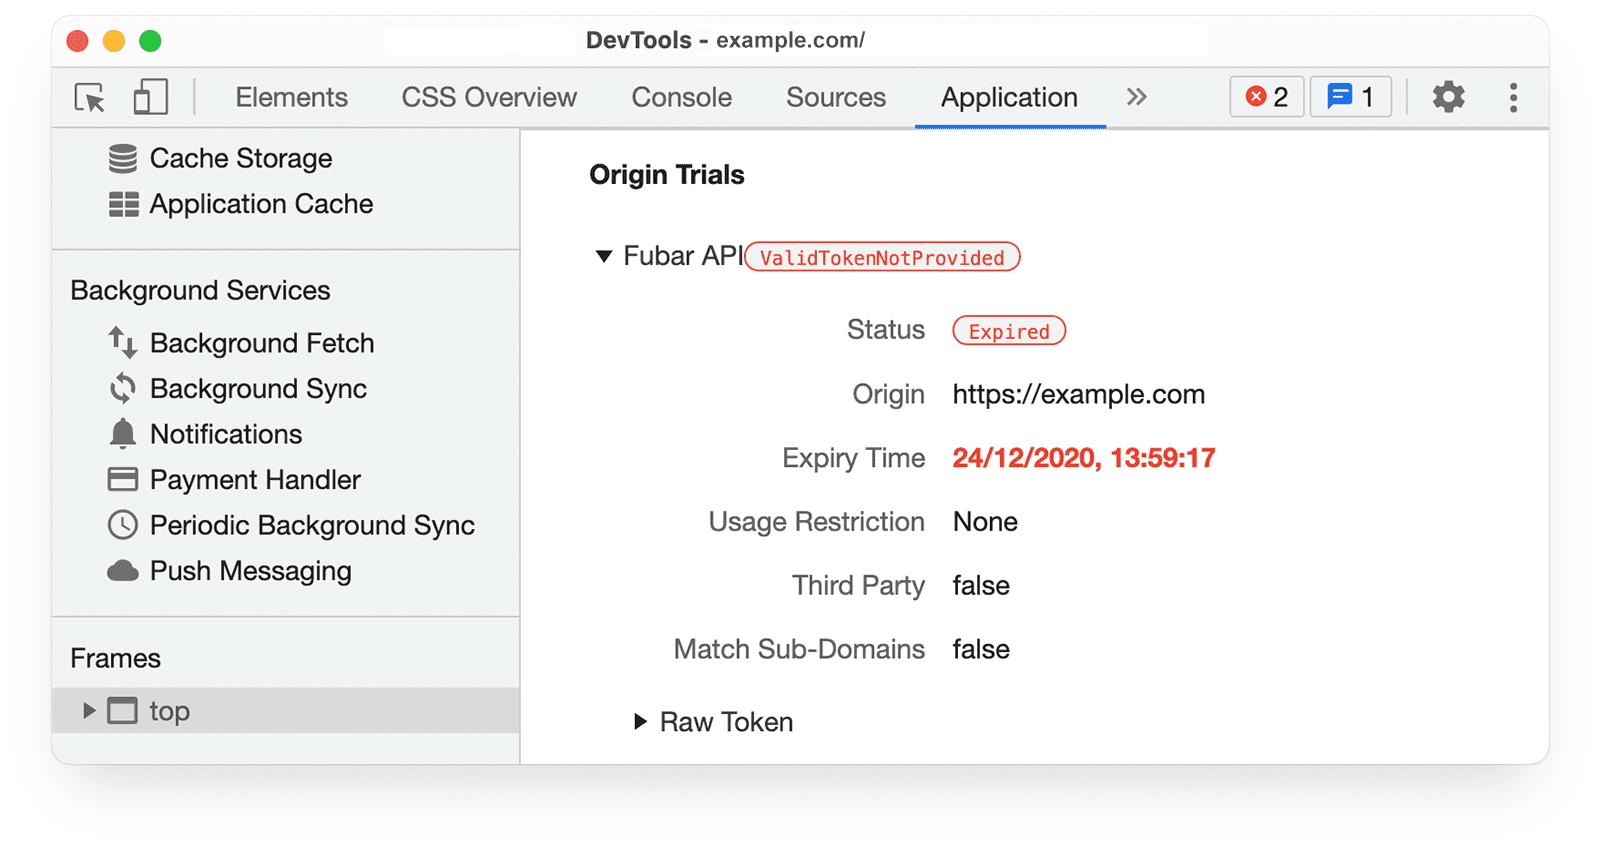 Informações sobre testes de origem do Chrome DevTools no painel &quot;Application&quot;, mostrando ValidTokenNotProvided e Status Expirado